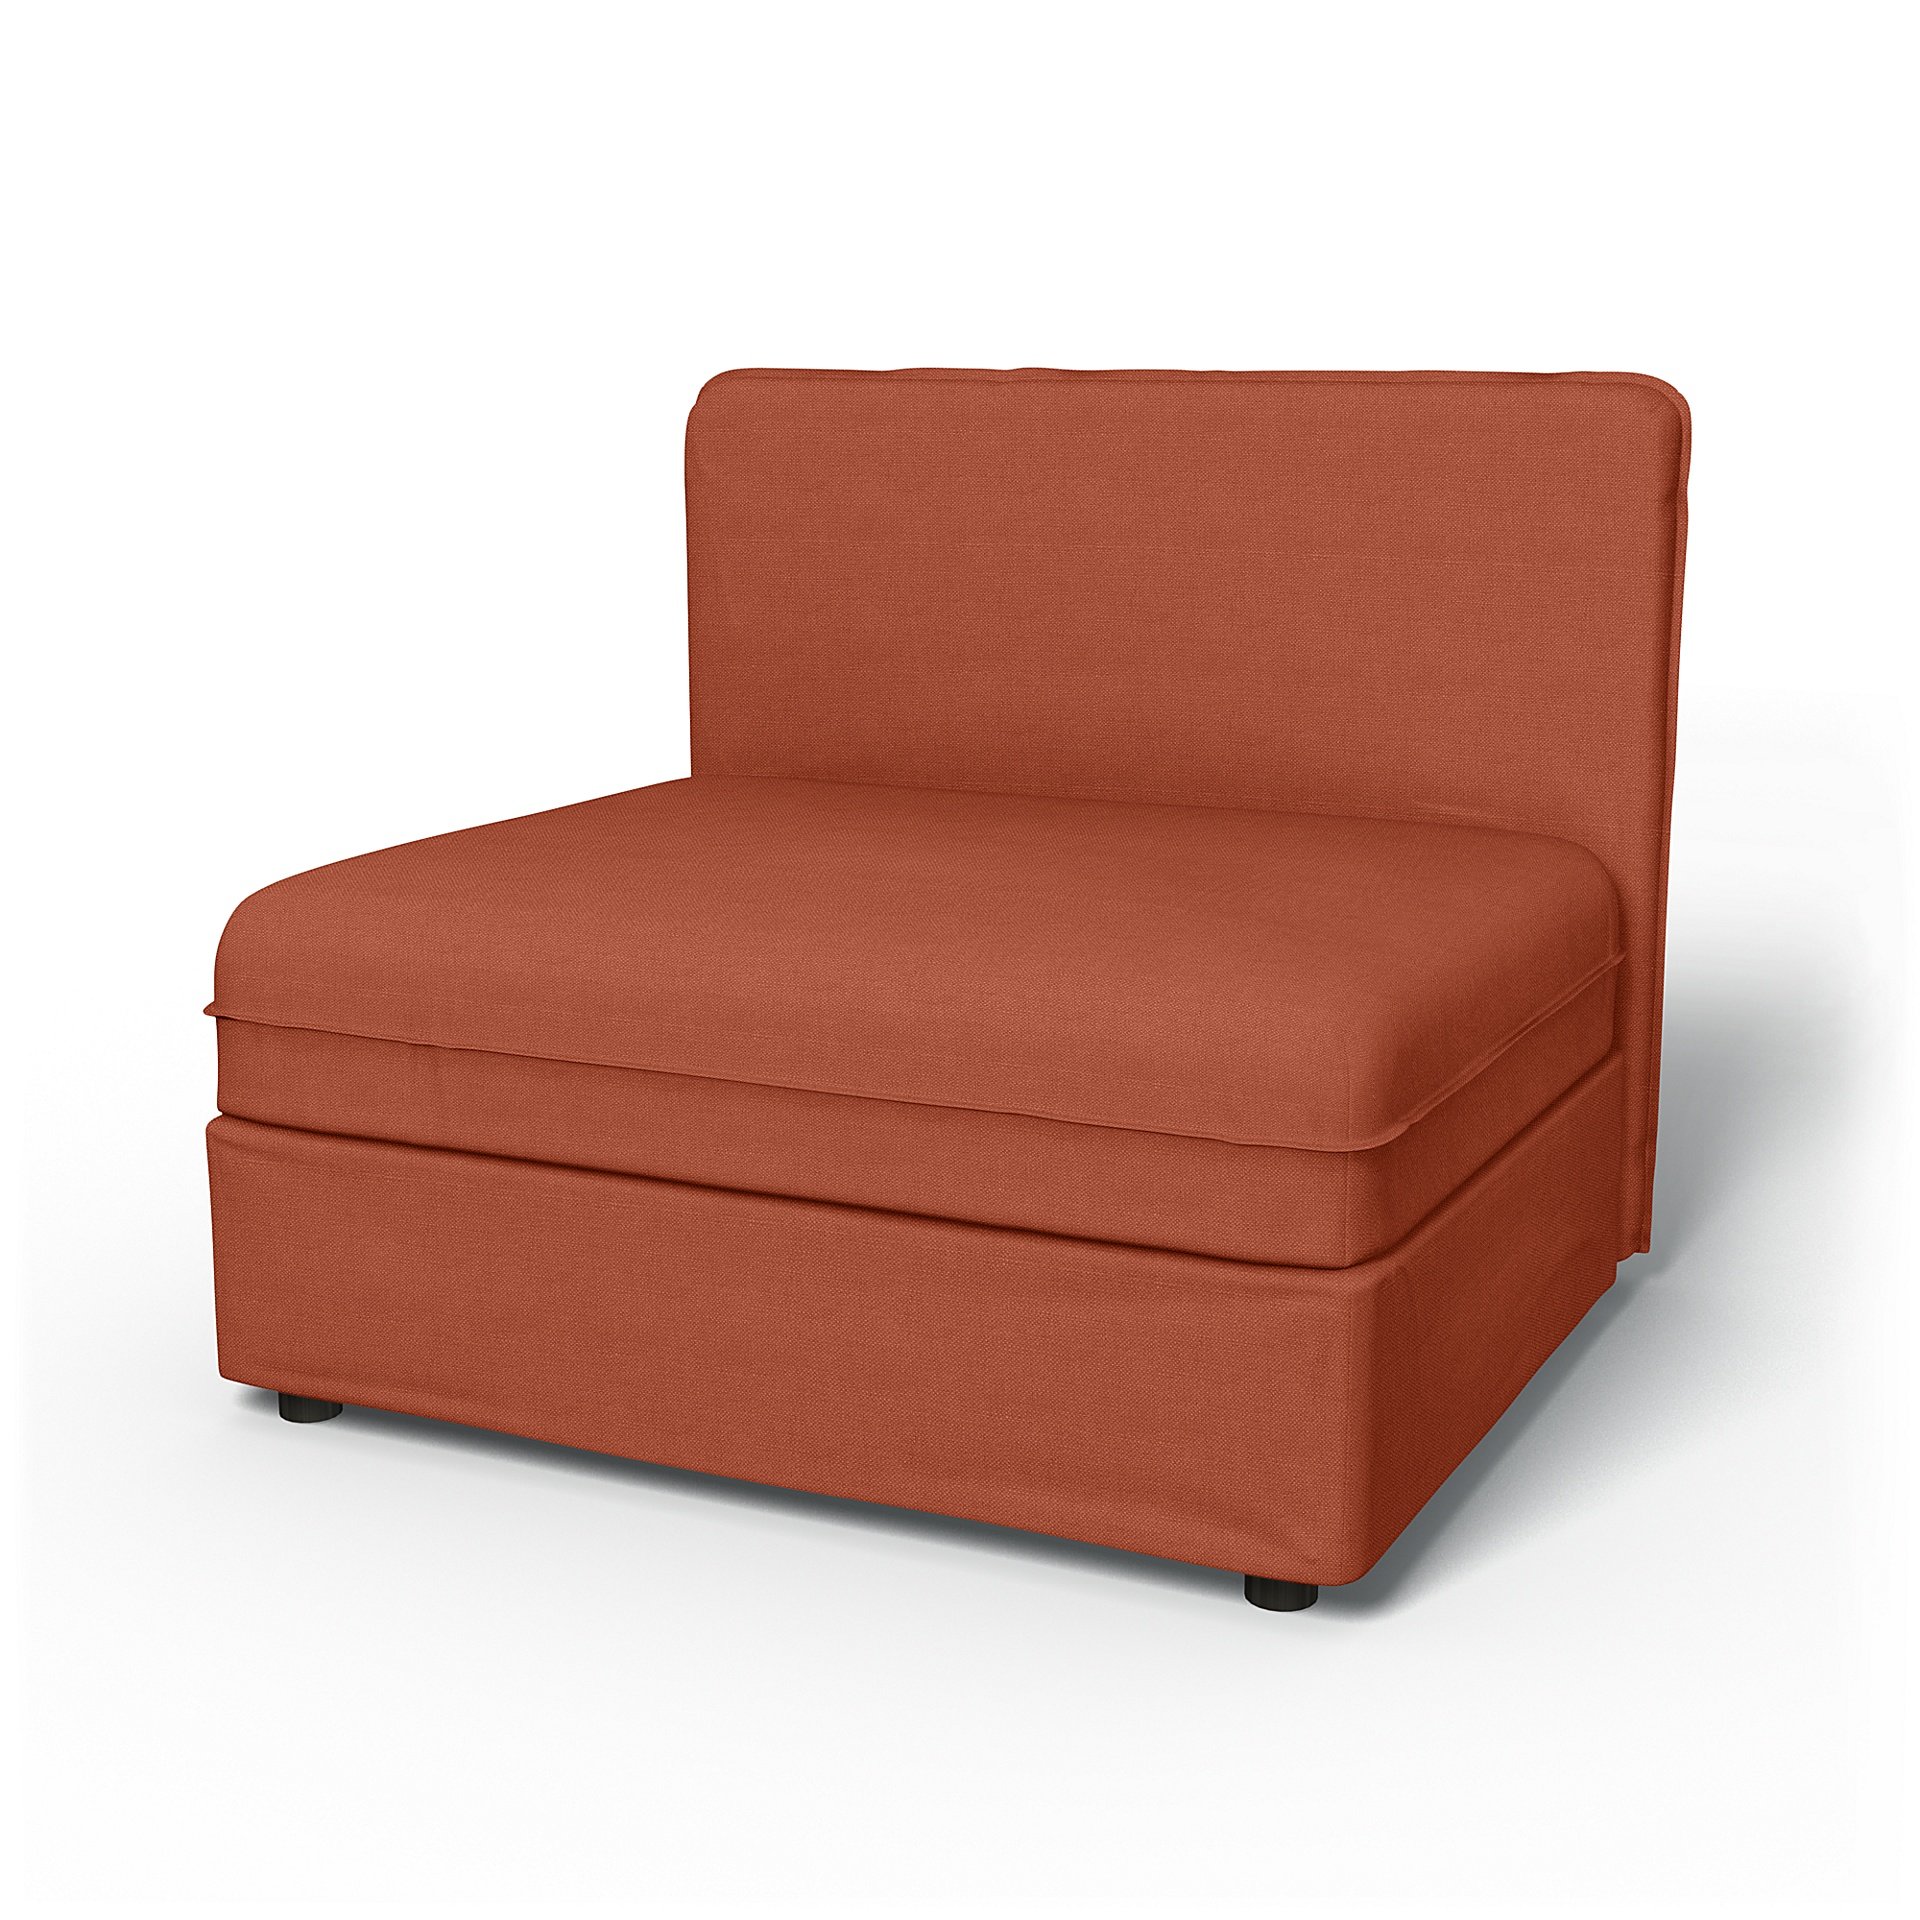 IKEA - Vallentuna Seat Module with Low Back Cover 100x80cm 39x32in, Burnt Orange, Linen - Bemz